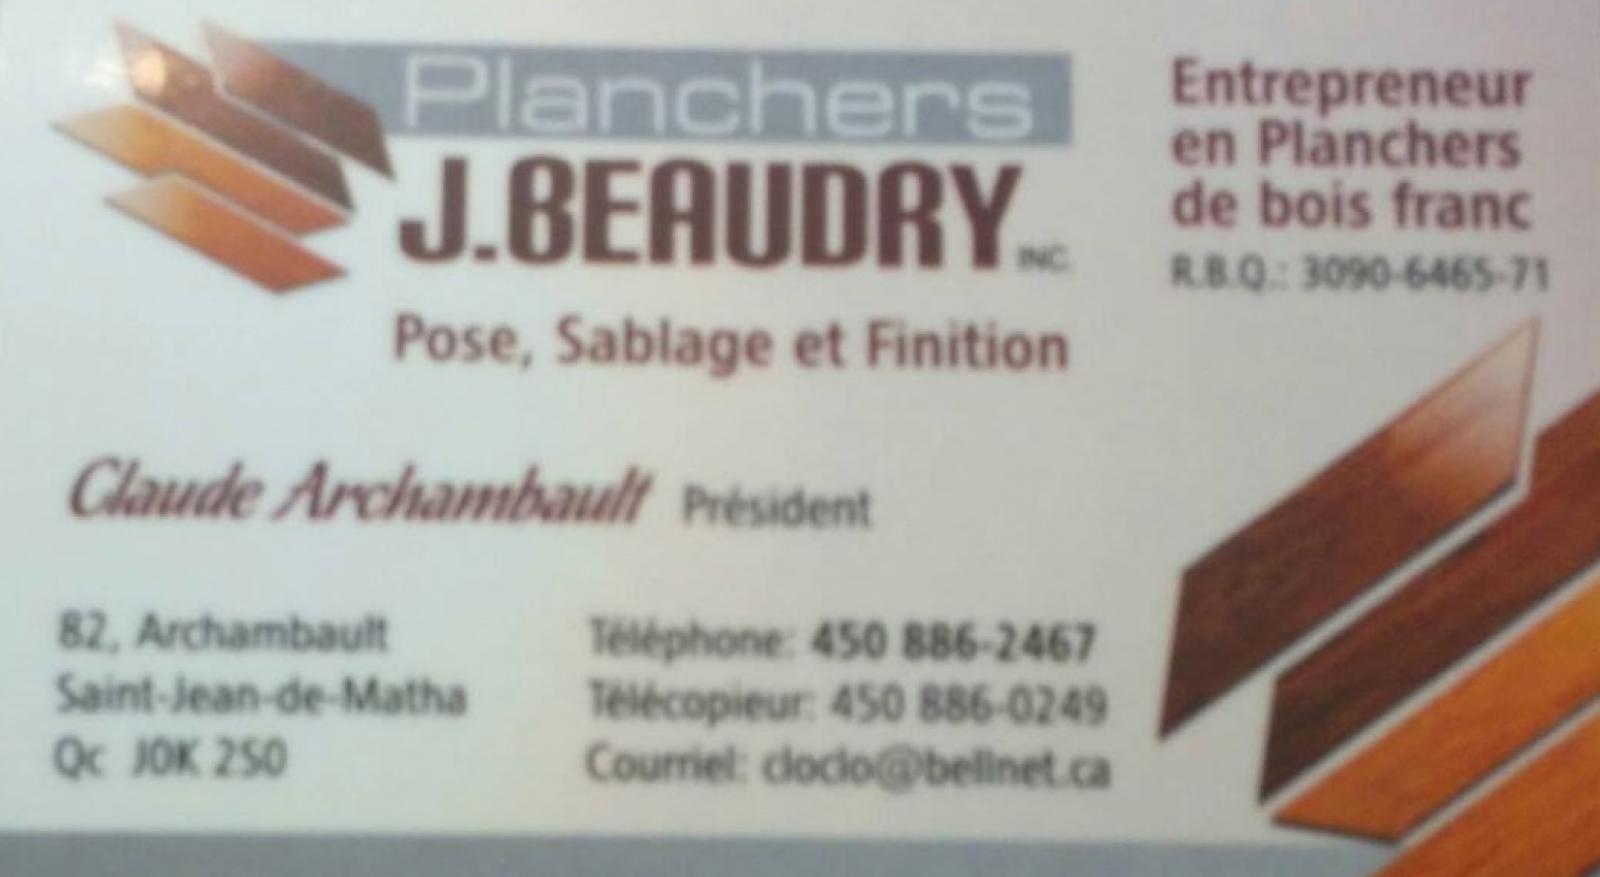 Plancher Jacques Beaudry Saint-Jean-de-Matha, (QC) Logo